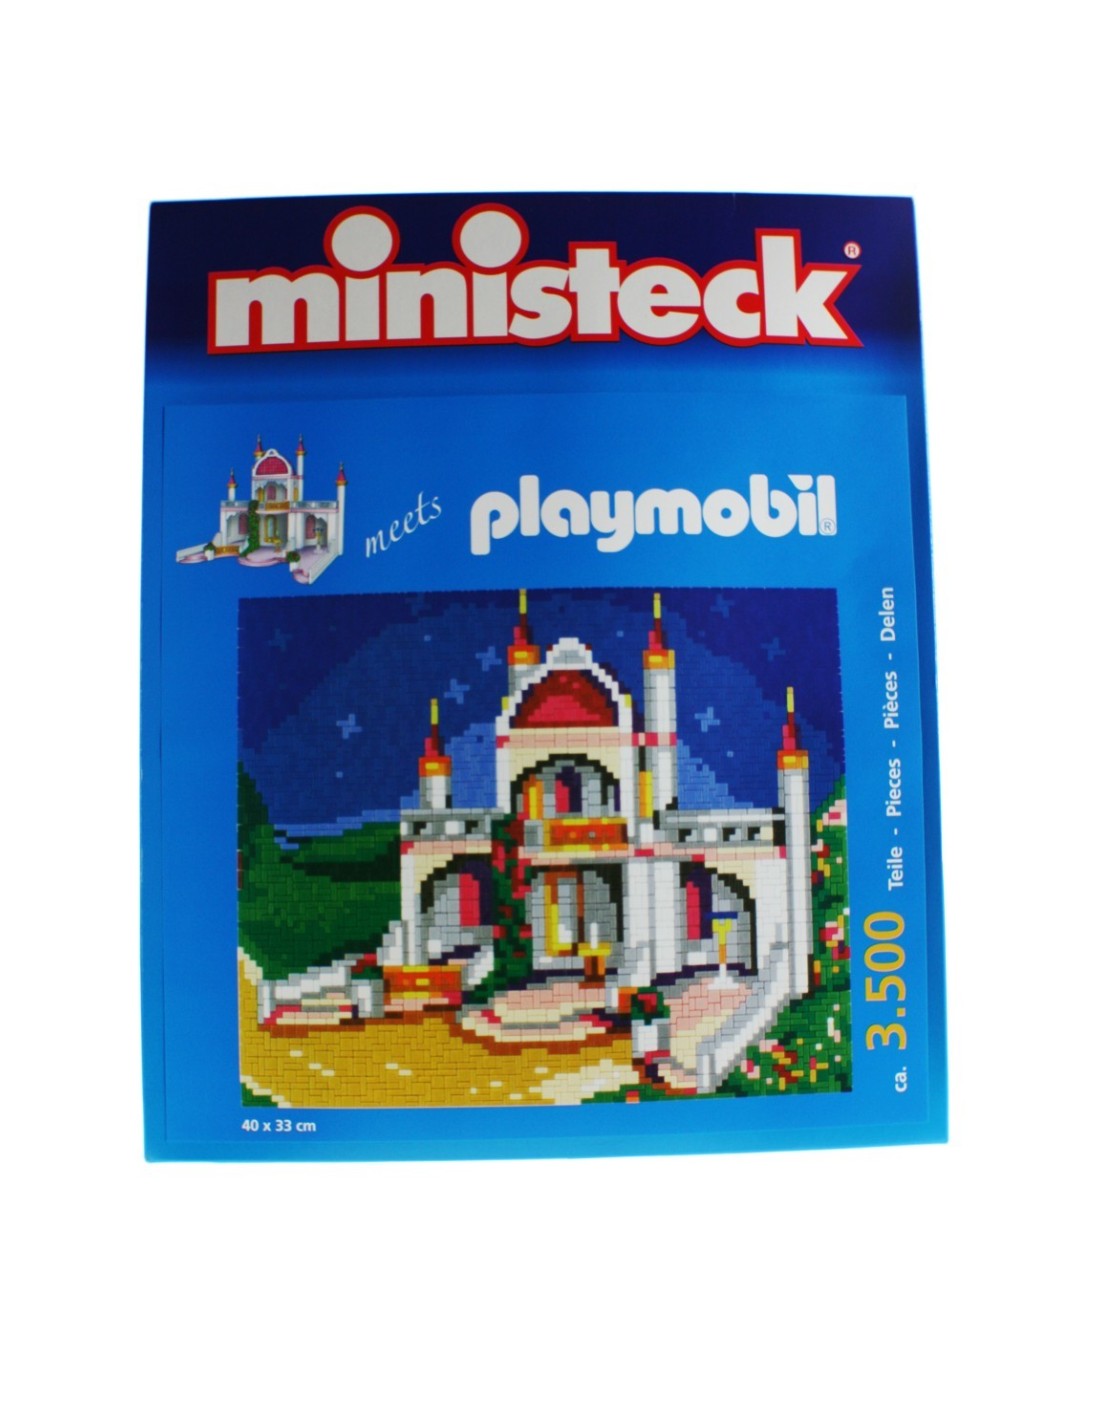 Puzzle encajable playmobil de 3500 piezas con cuatro diseño de castillo juego de rompecabezas.